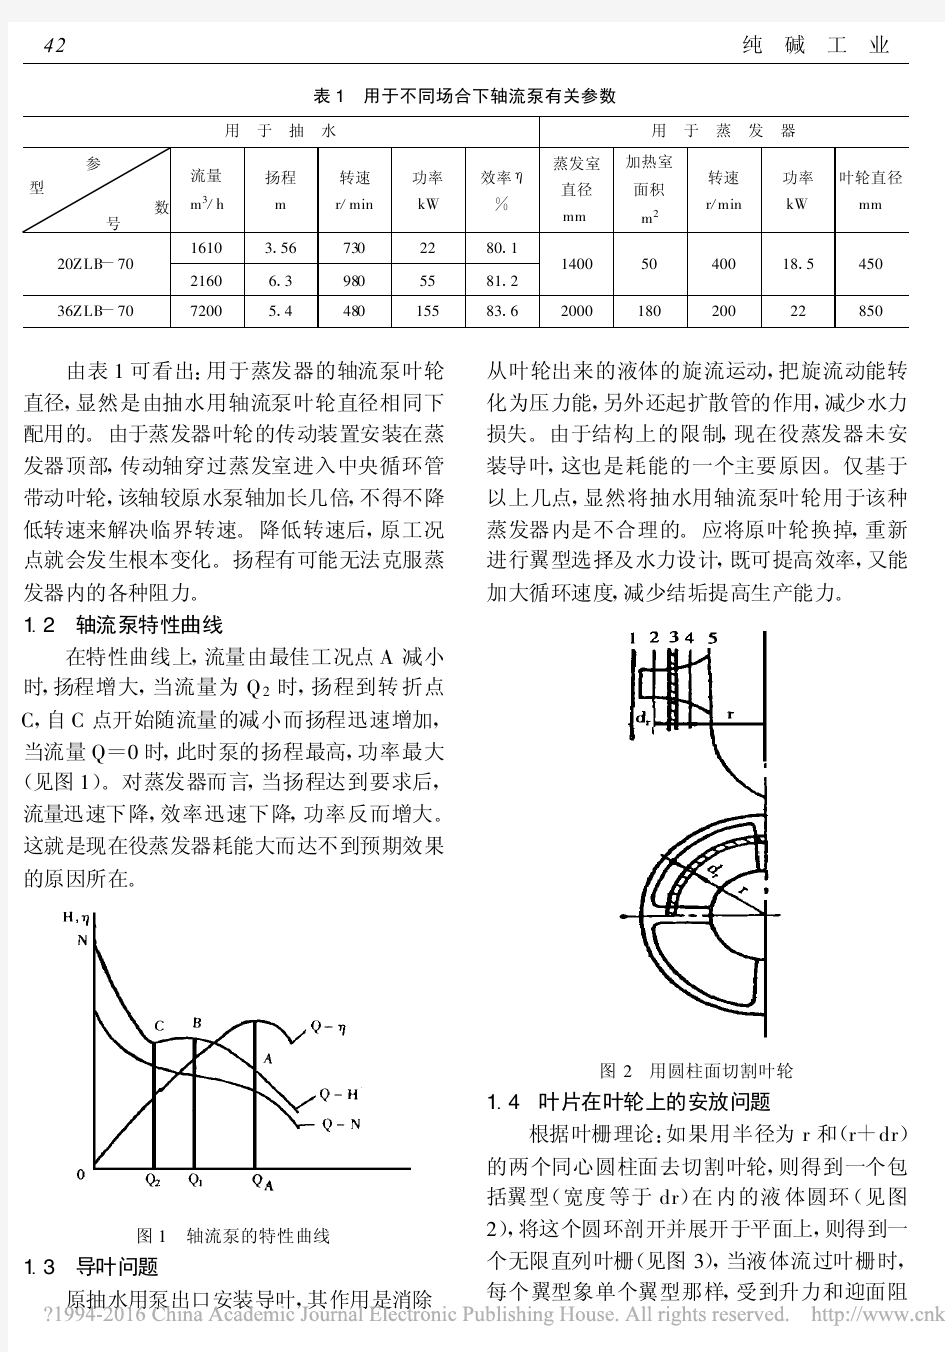 中央内强制循环管式蒸发器轴流泵的设计计算_吉仁塔布